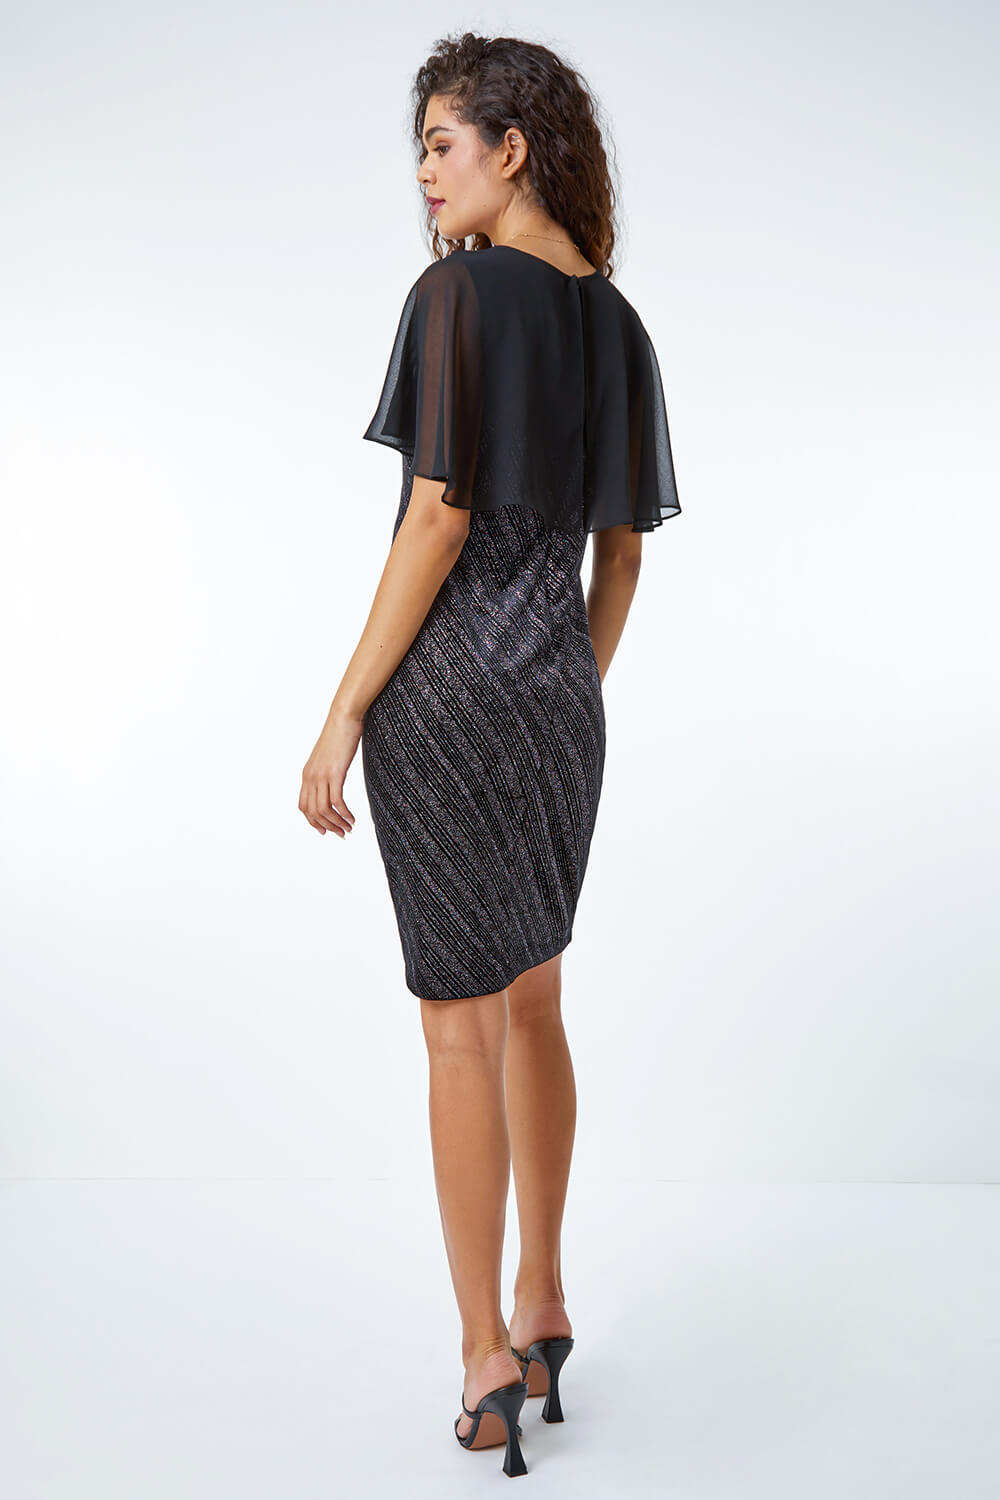 Black Velvet Shimmer Cape Detail Dress, Image 3 of 5